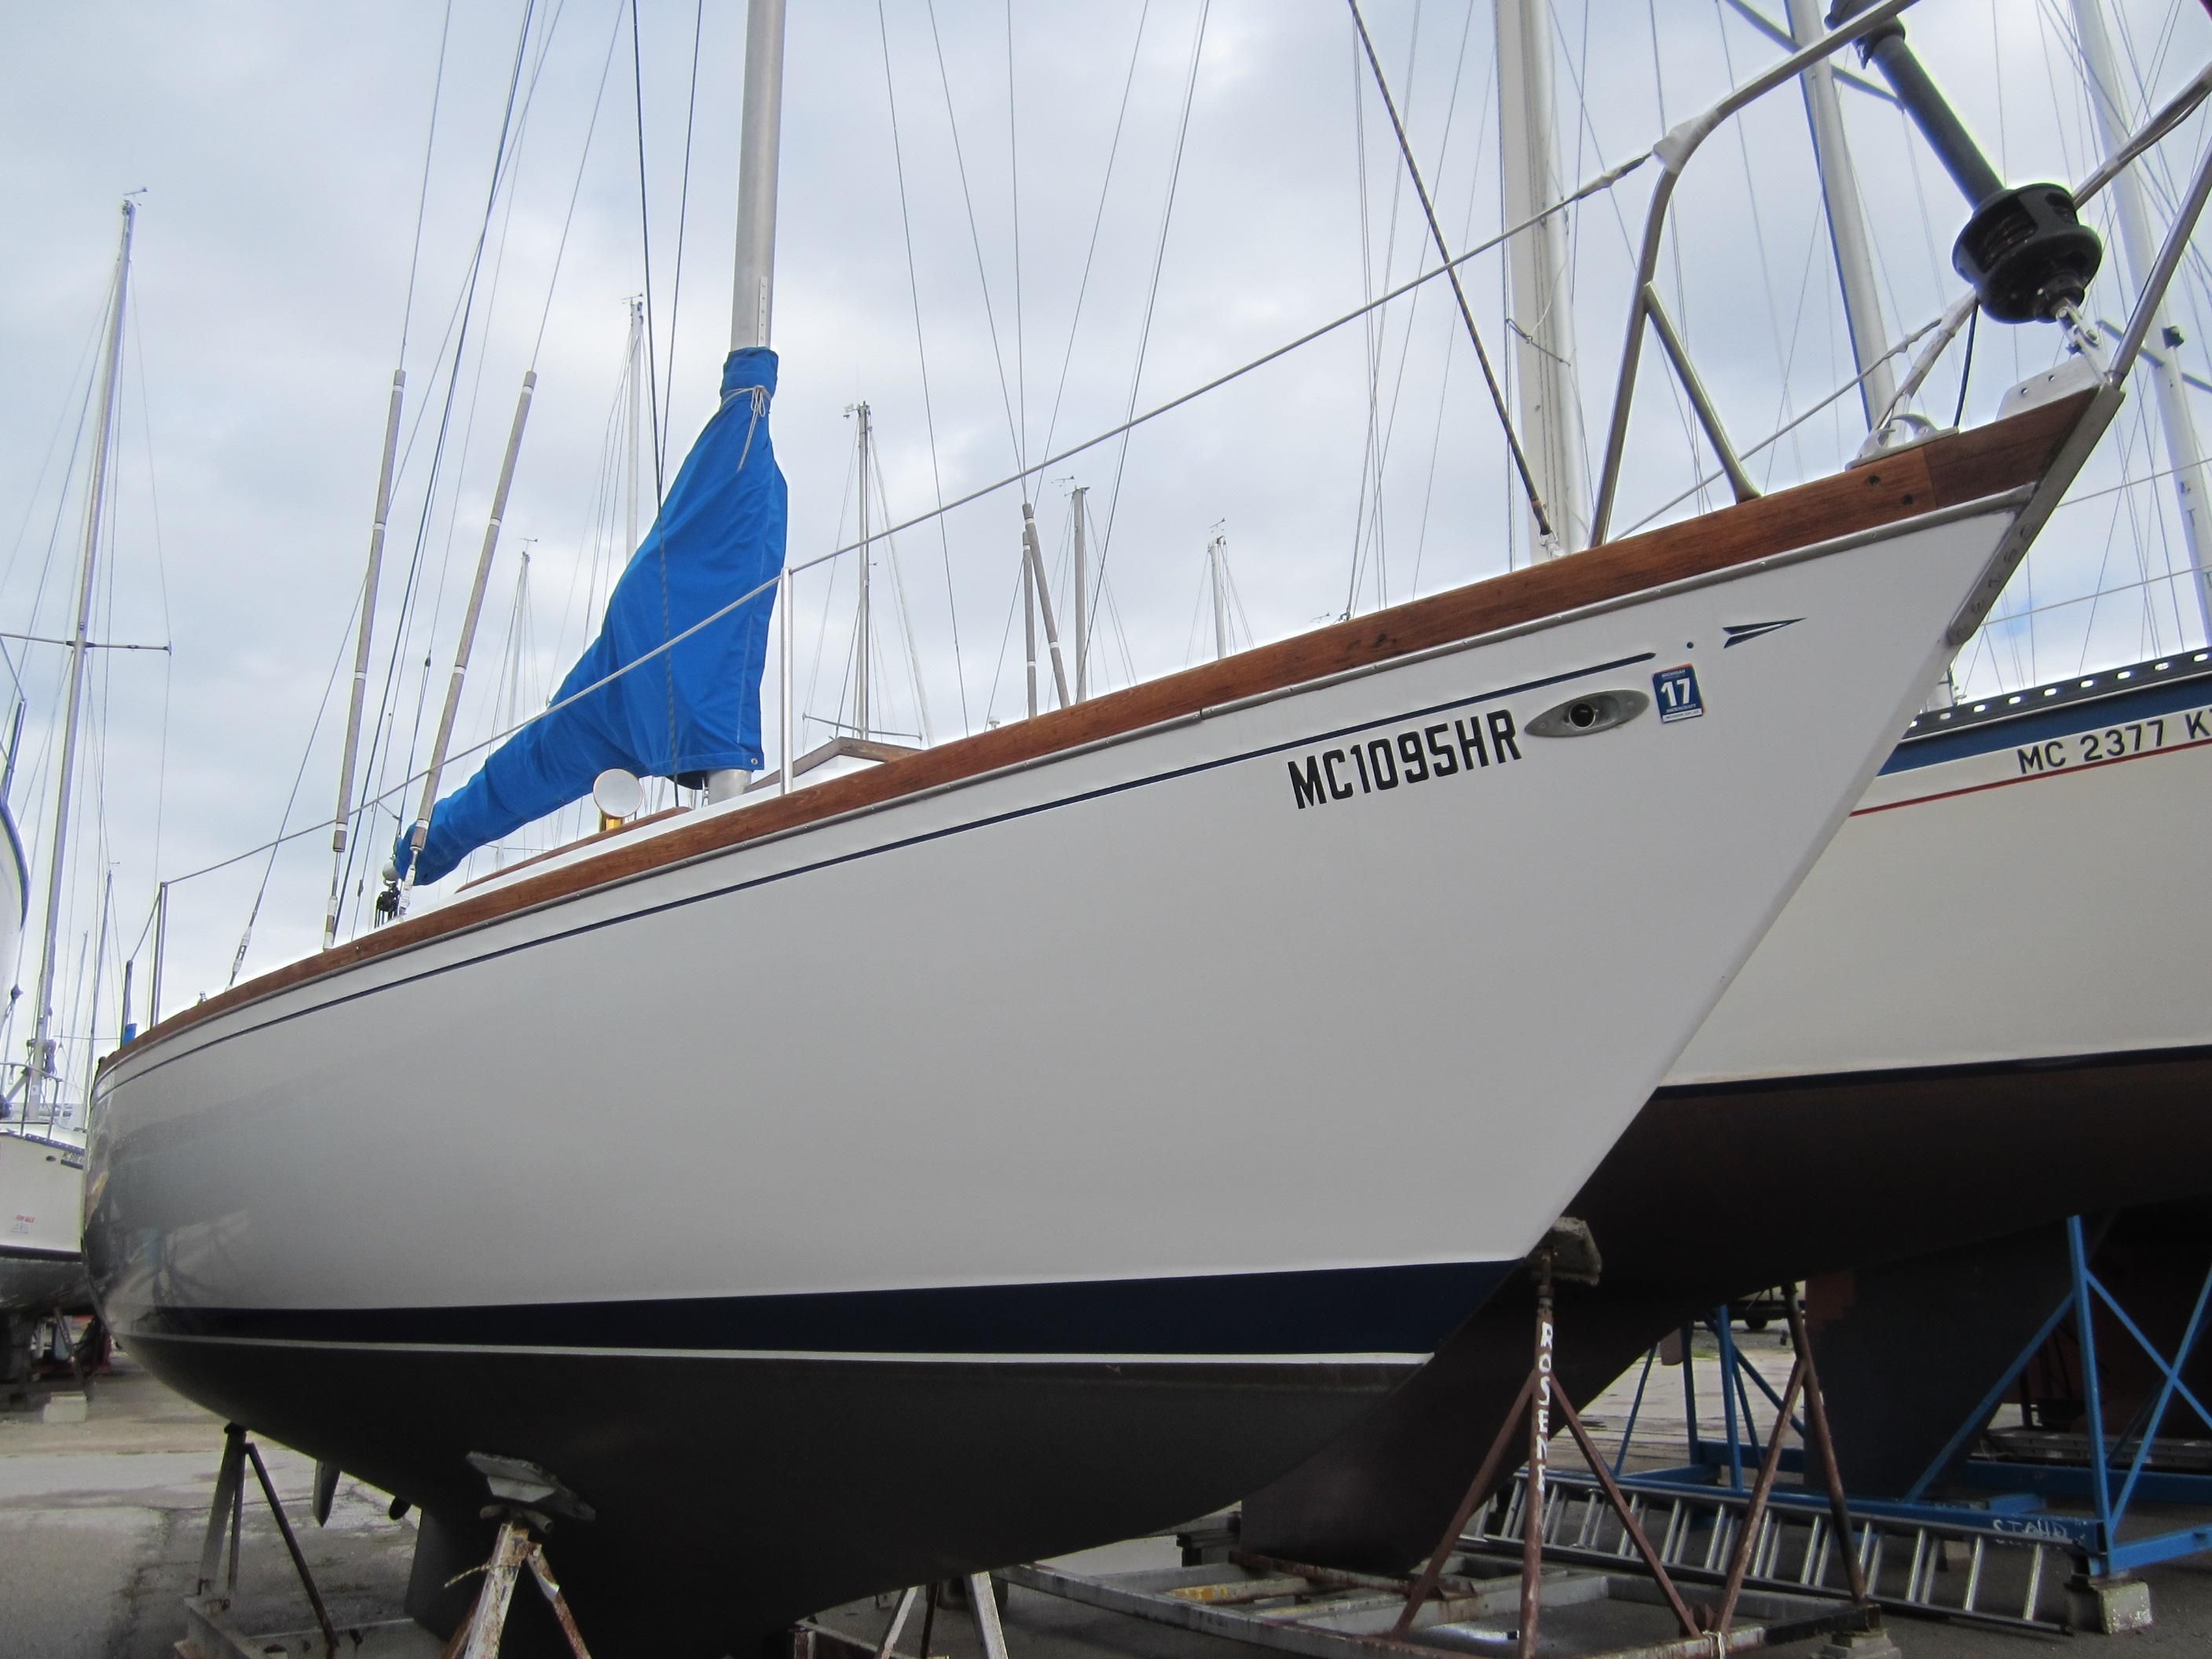 34c yacht